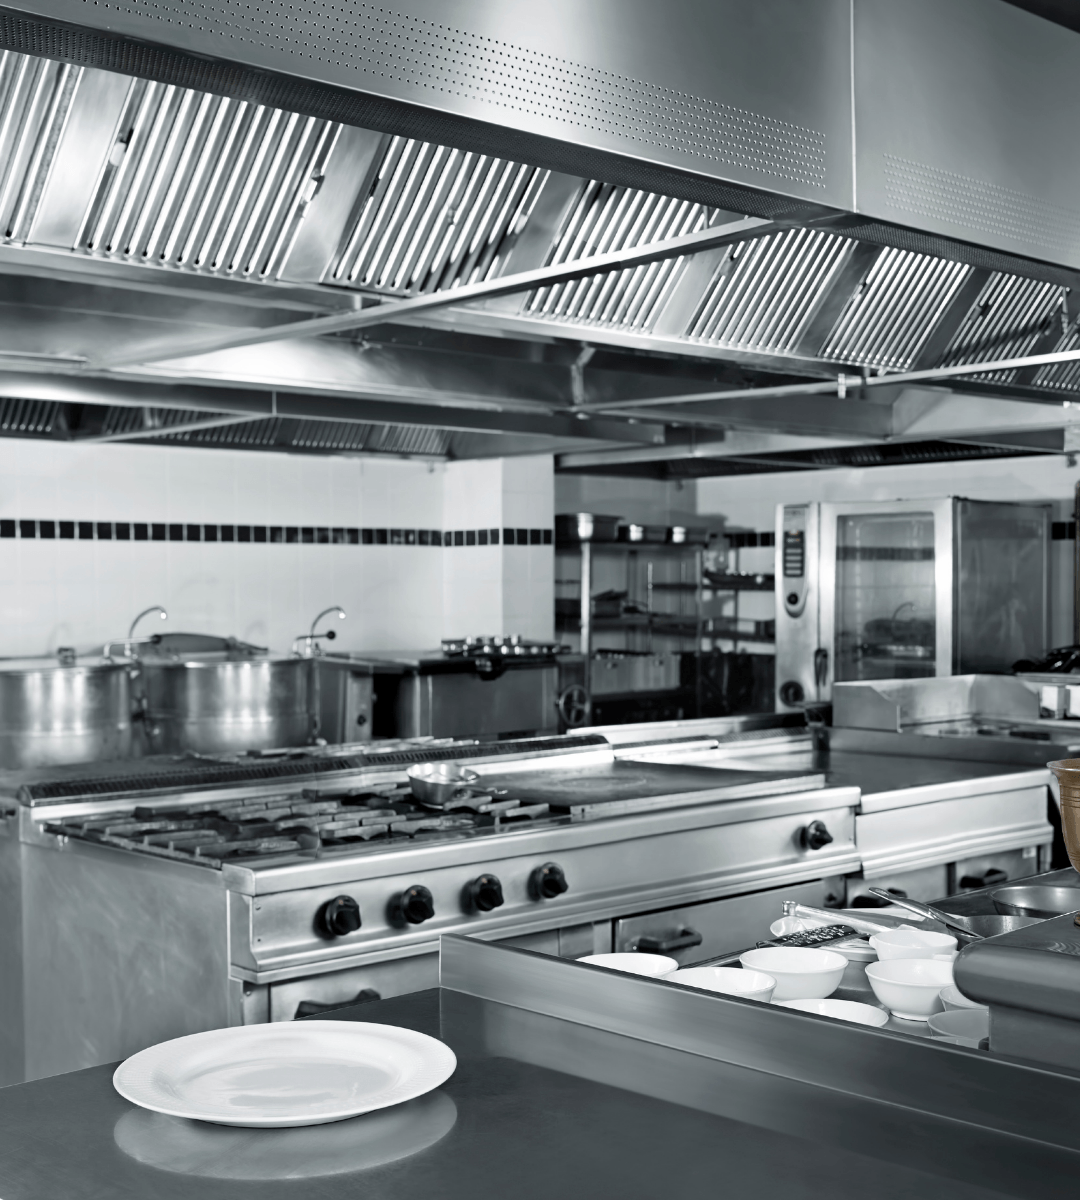 Empty restaurant kitchen with pristine stainless steel appliances